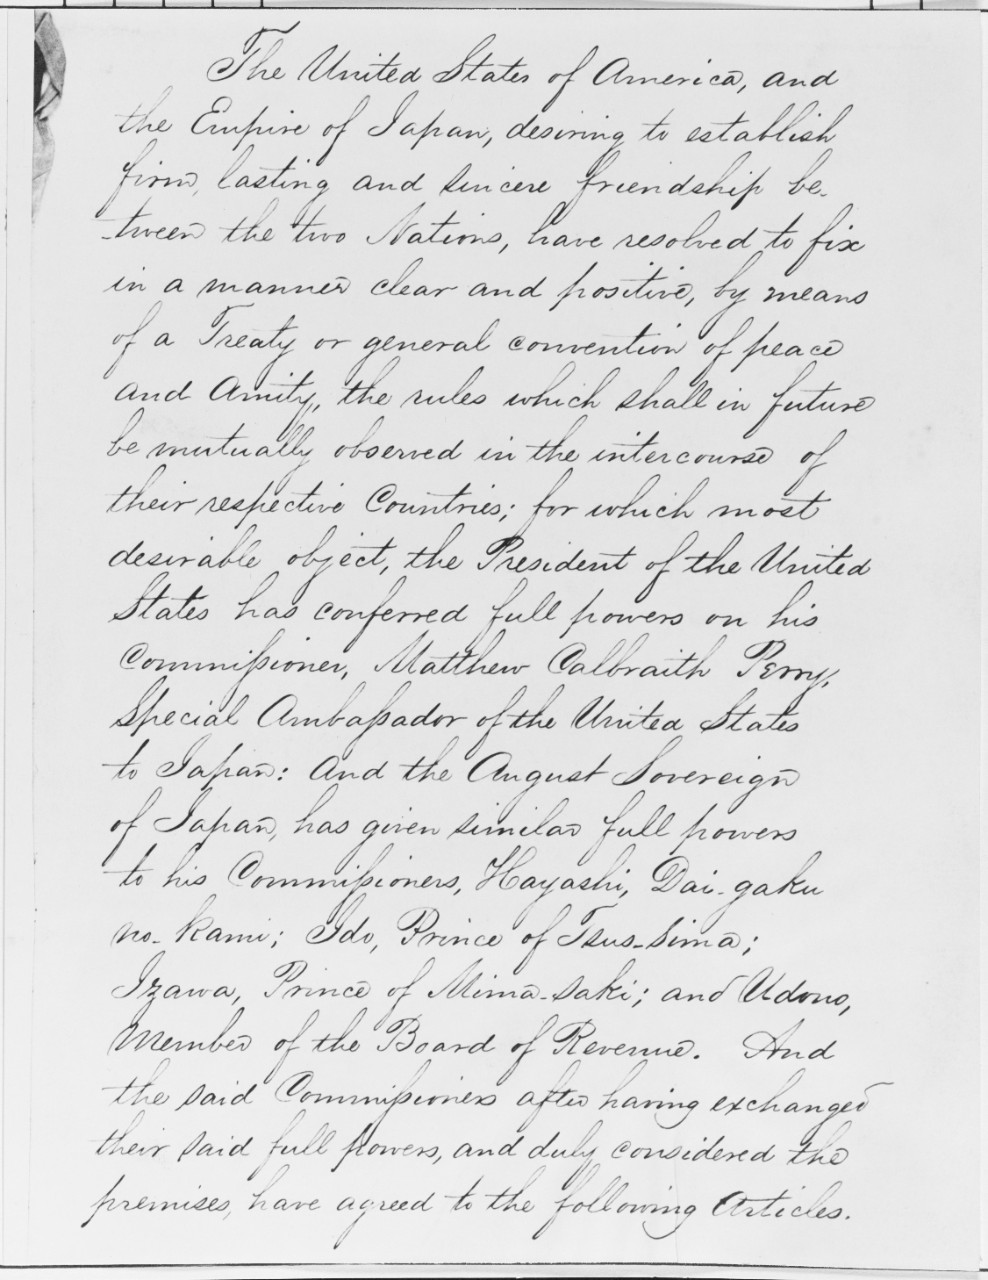 U.S. Treaty with Japan, 1854